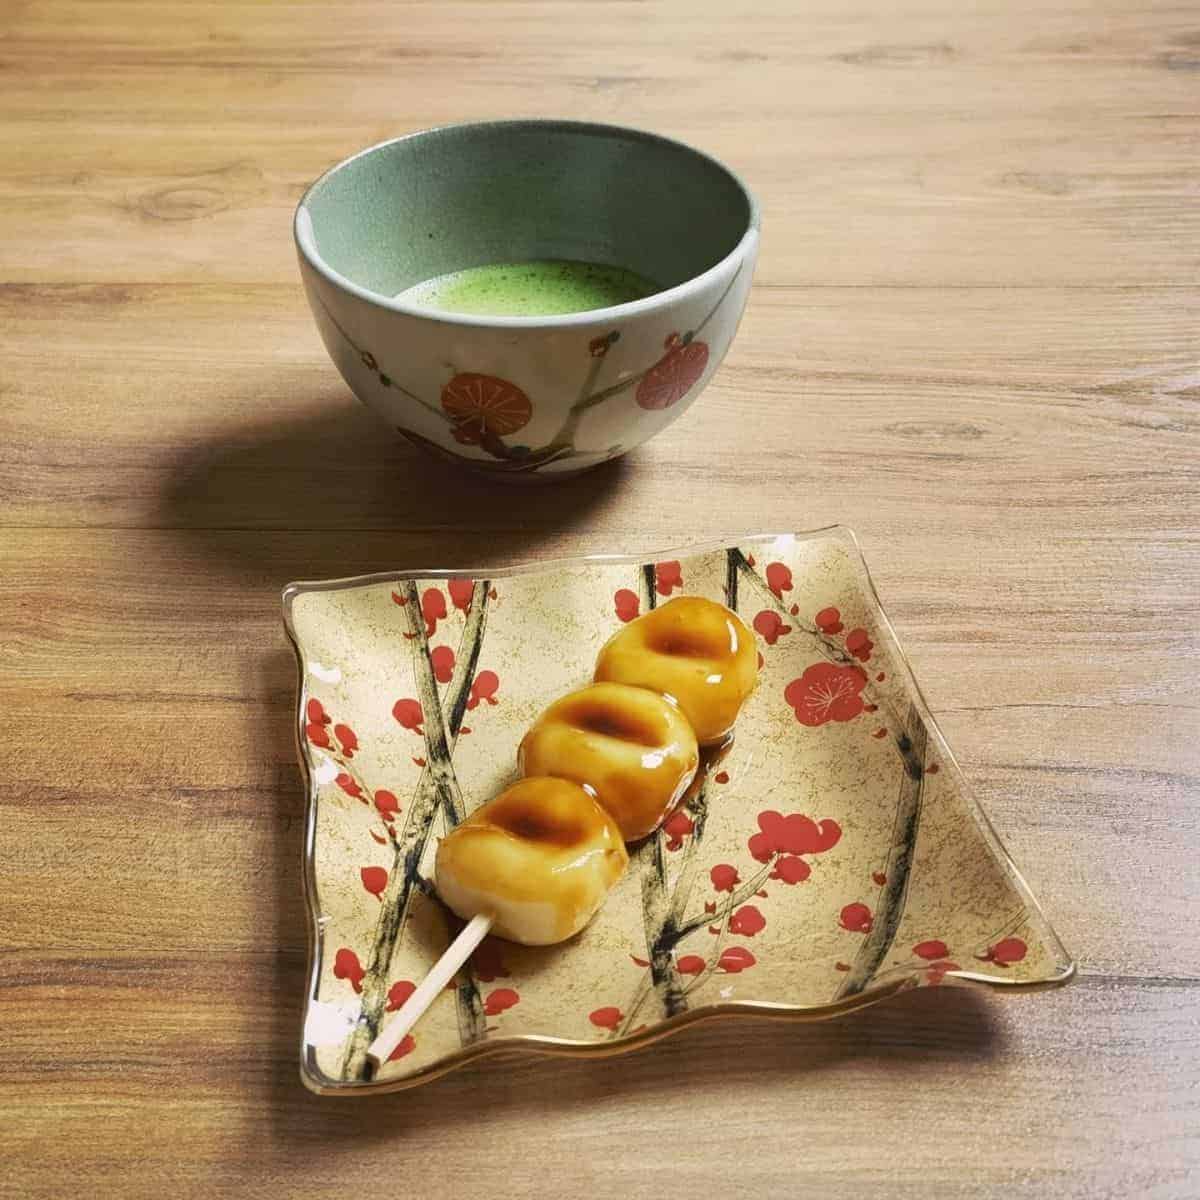 mitarashi dango and matcha tea